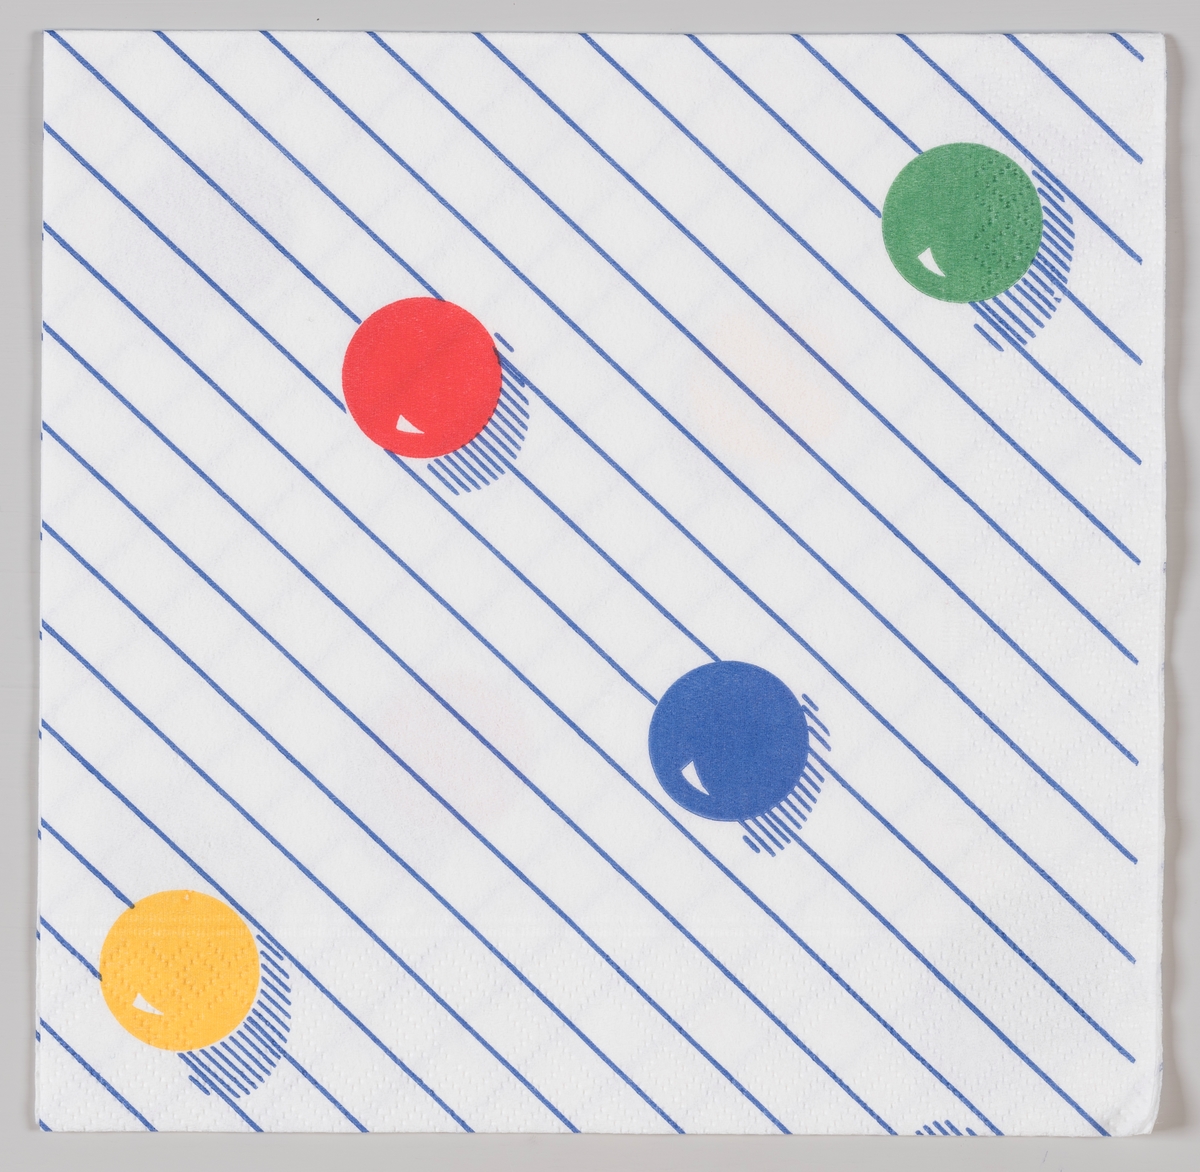 Fire kuler i fargene rød, gul, grønn, blå på en stripet bakgrunn